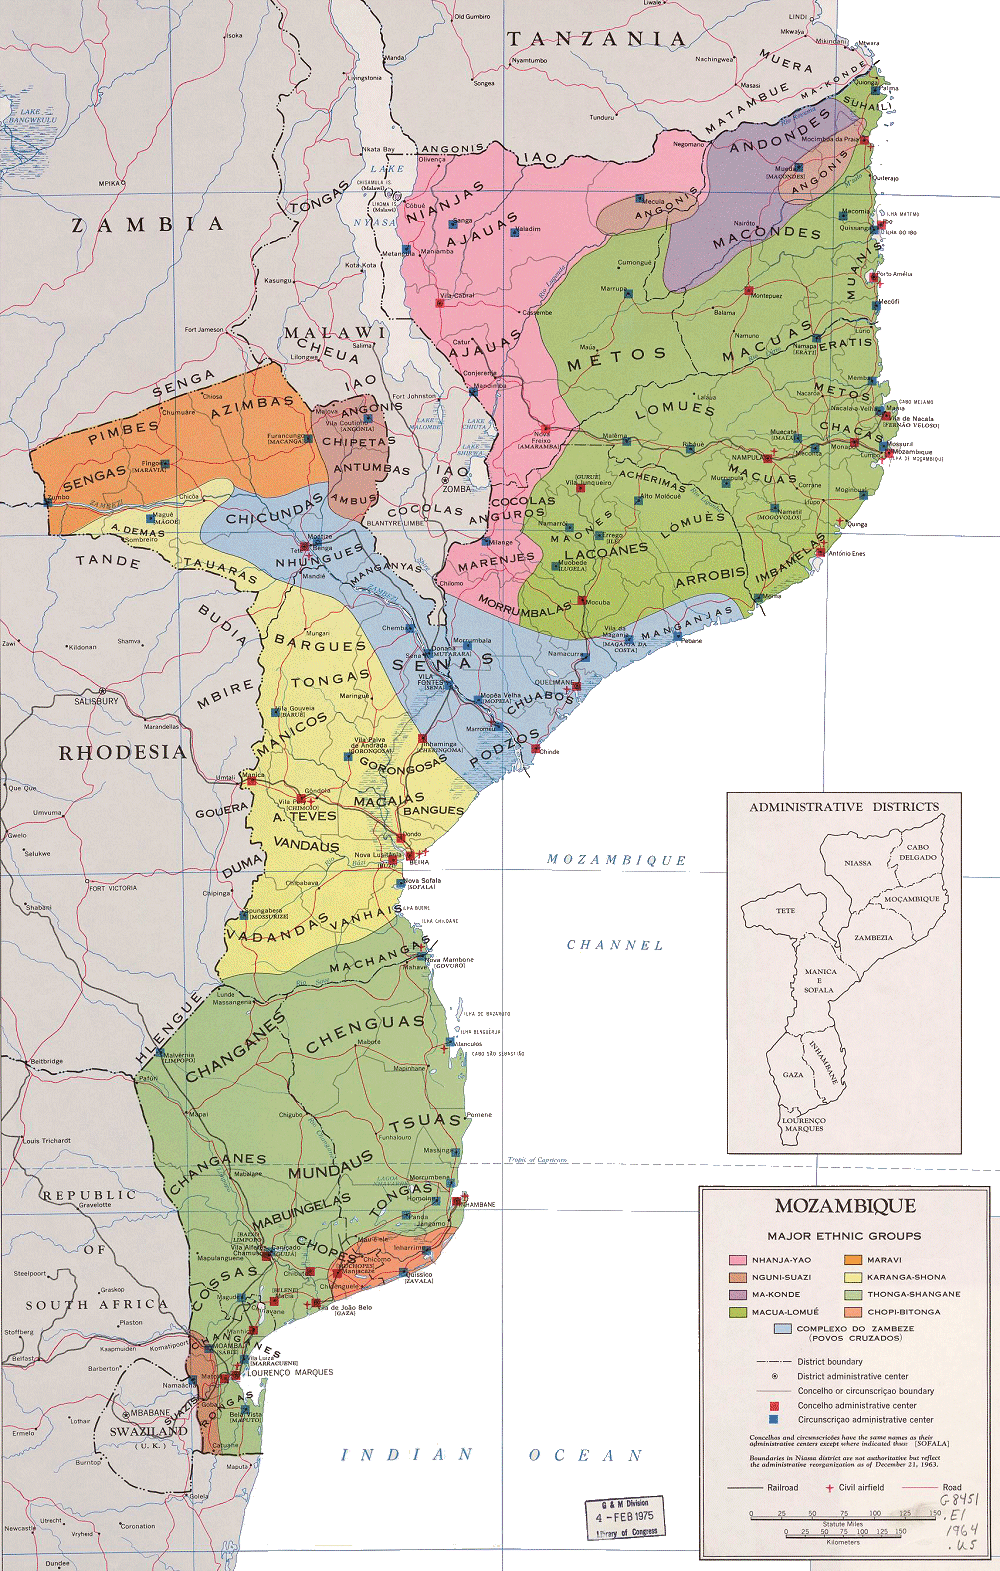 Carte du Mozambique  (ethnographie et divisions administratives).